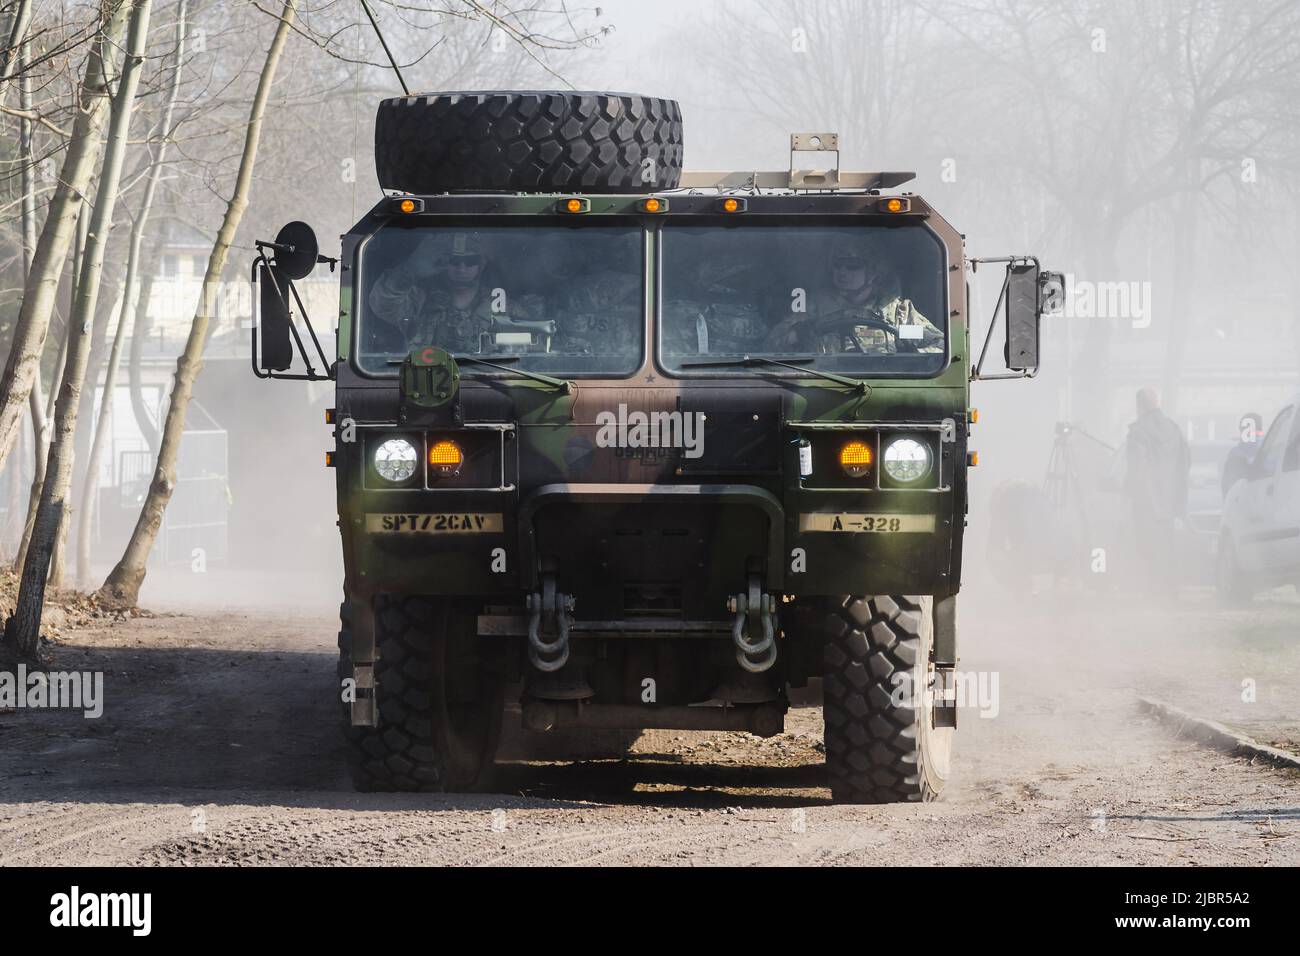 Lublin, Polonia - 25 marzo 2015: Sistema di veicoli logistici dell'esercito degli Stati Uniti Oshkosh che passa per le strade della città Foto Stock